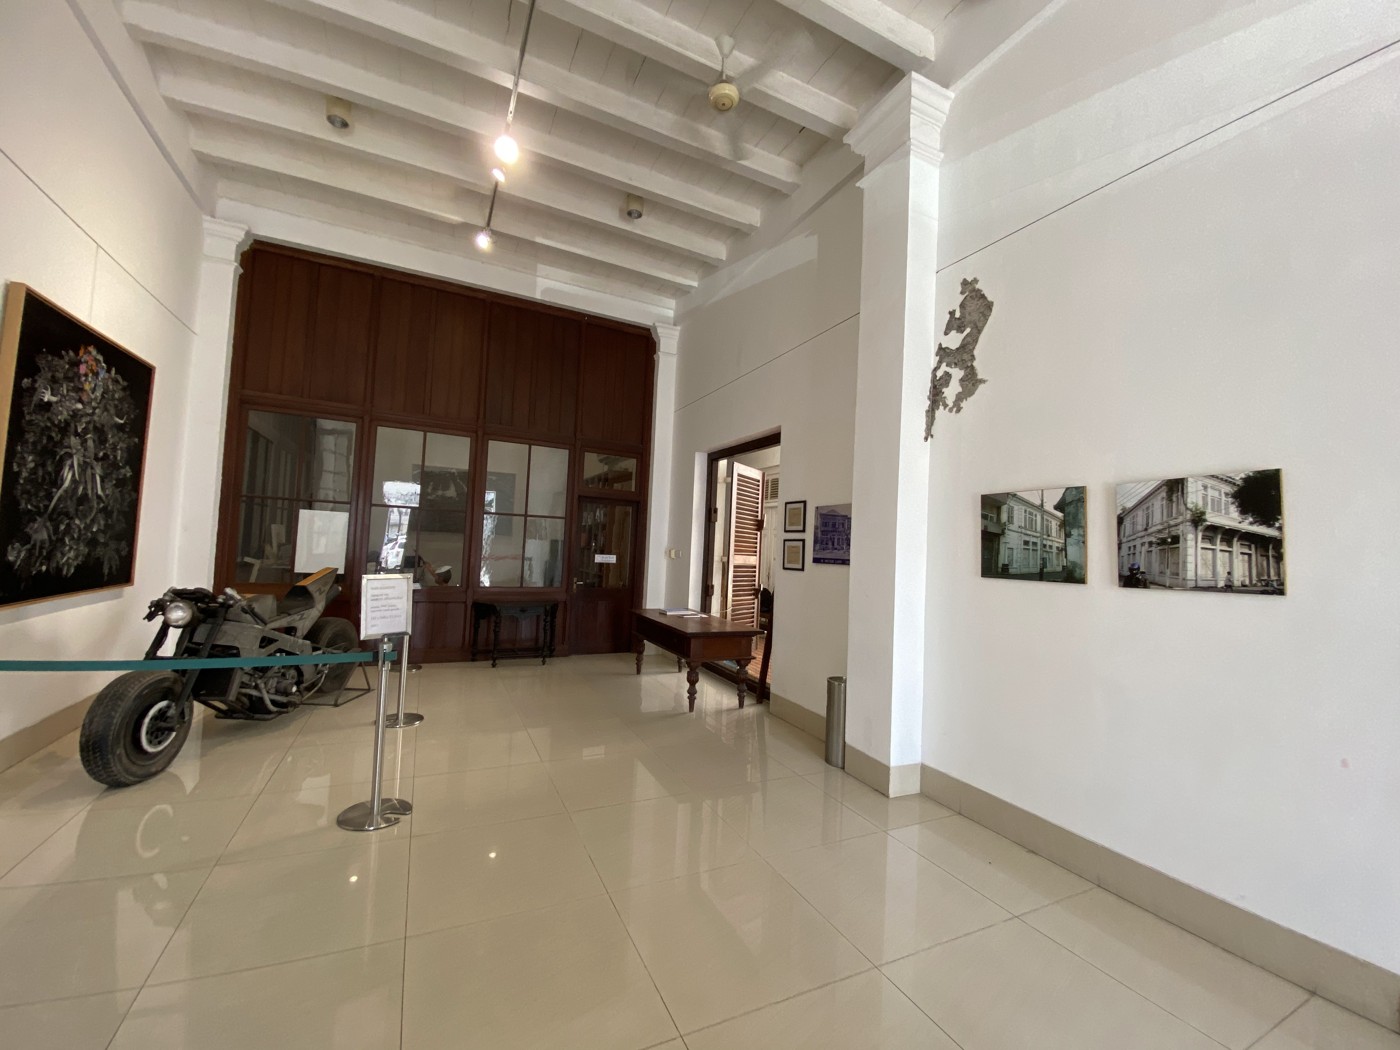 Semarang Gallery